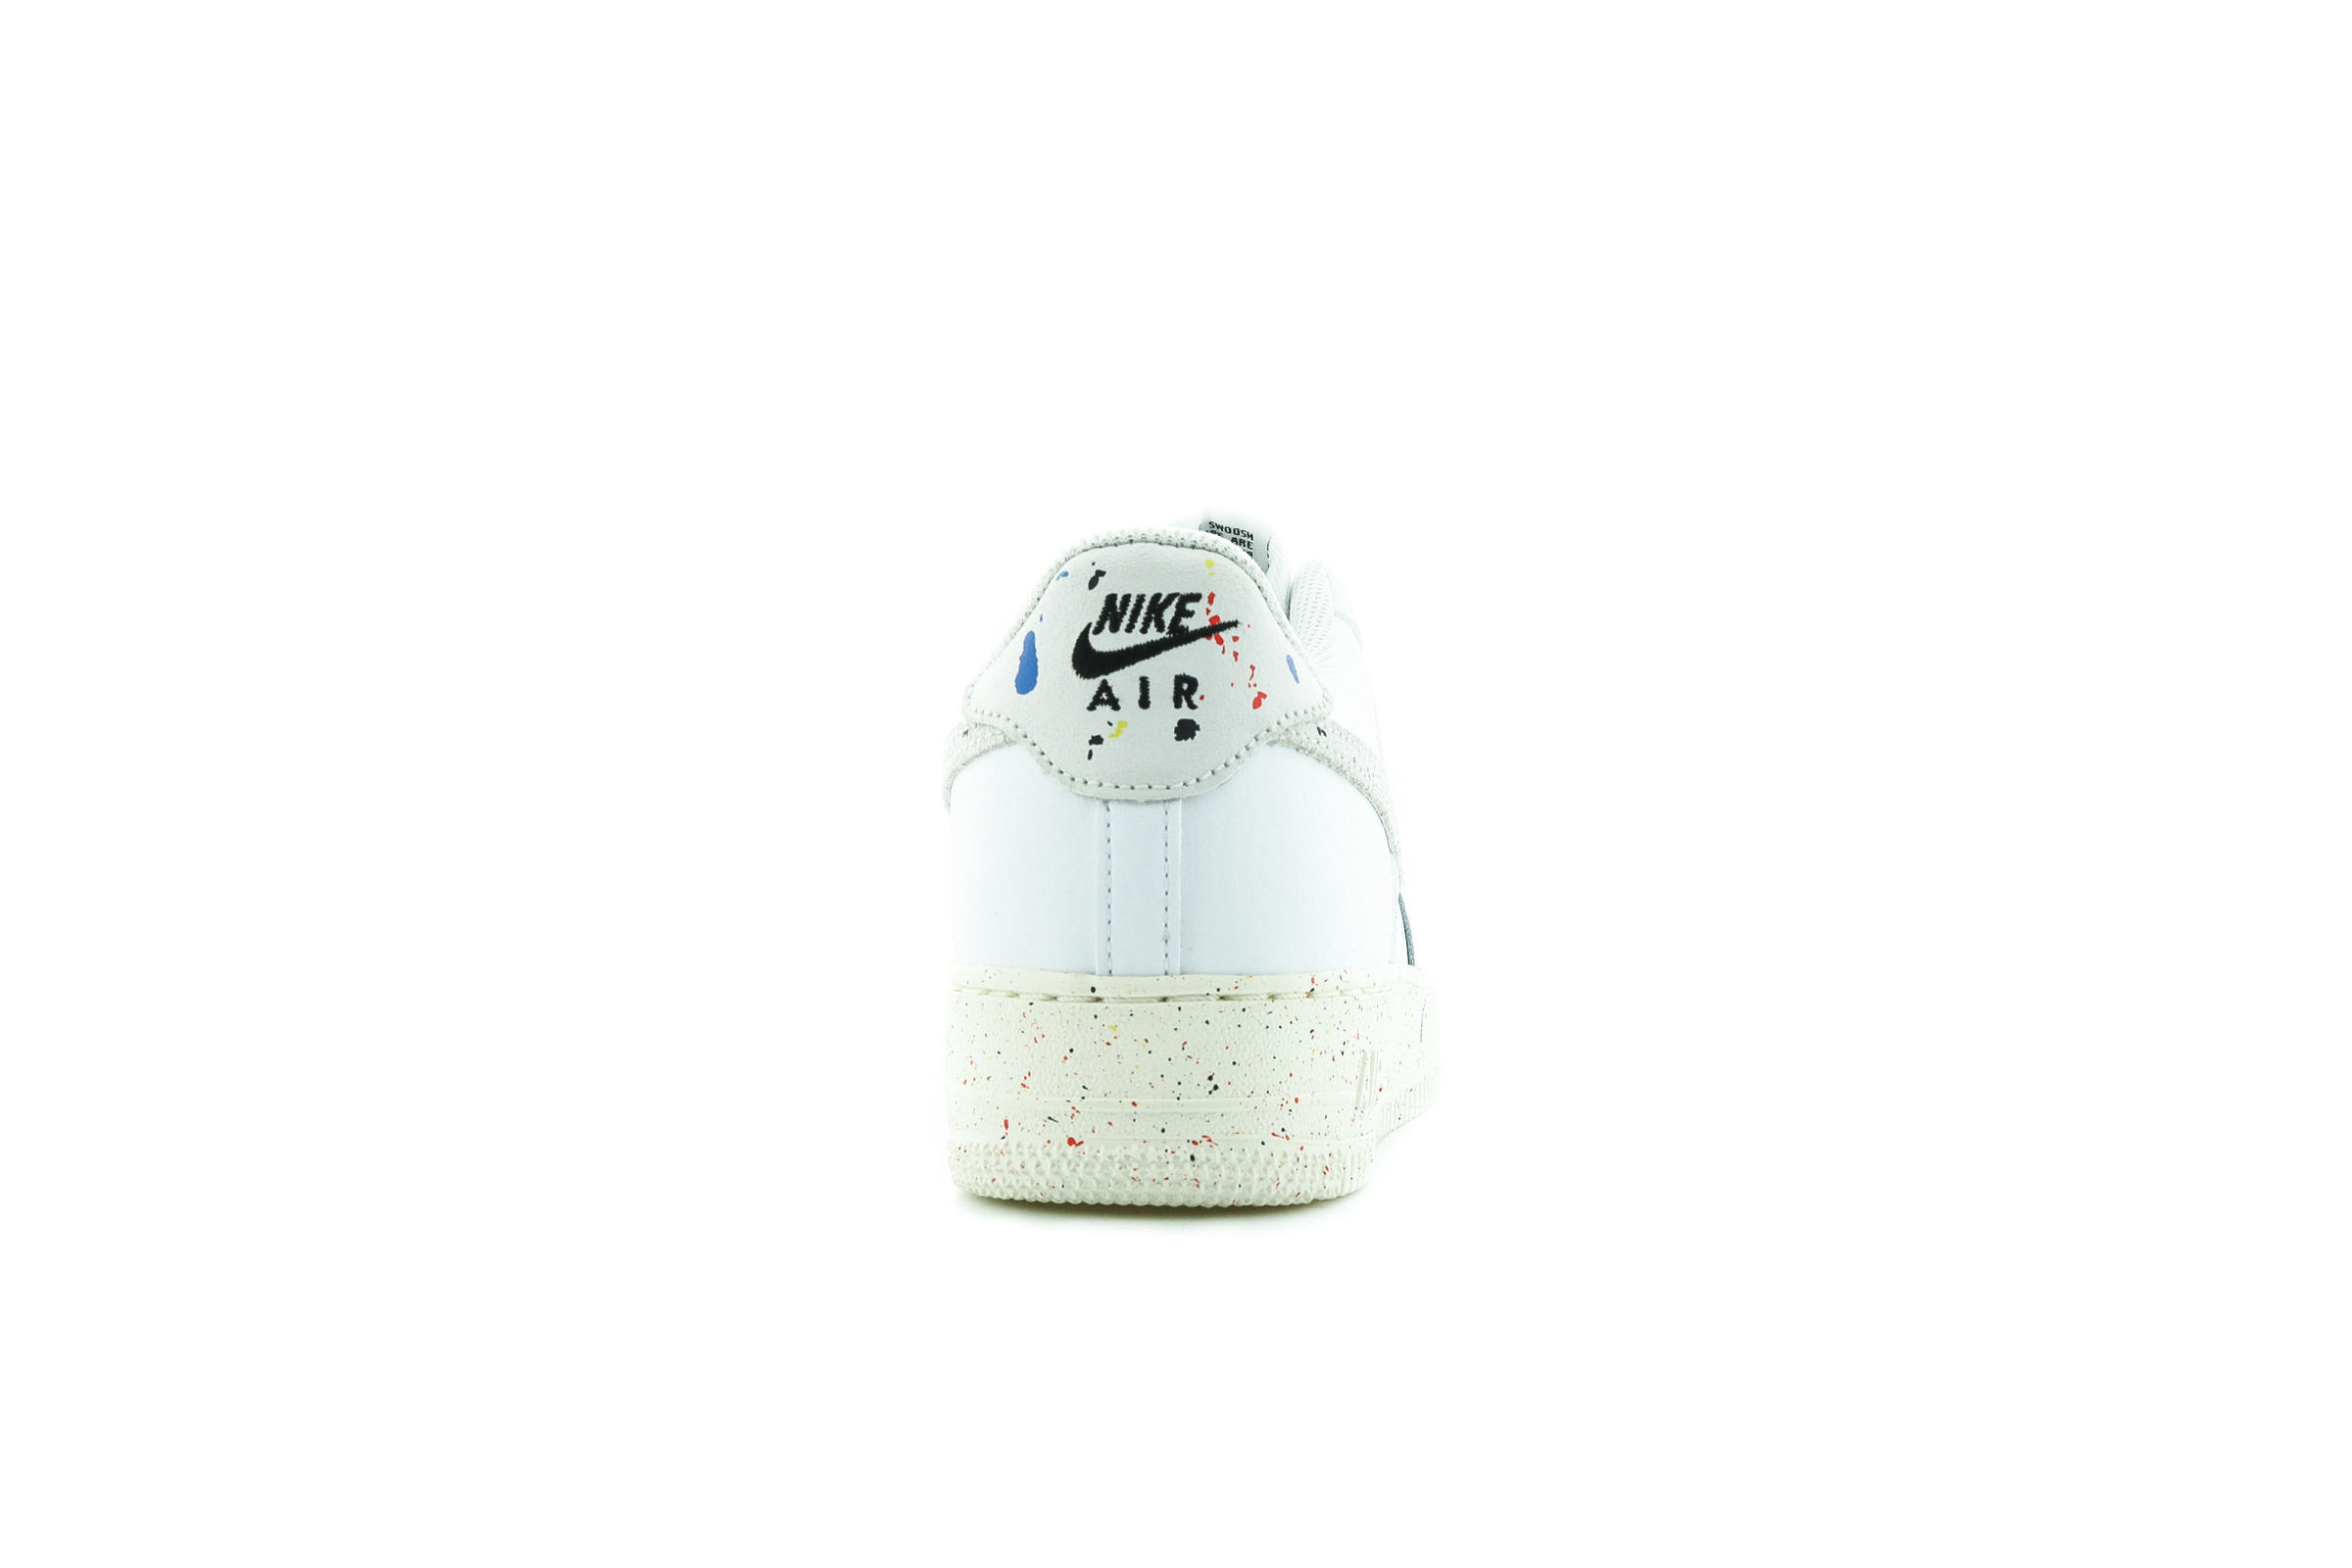 Nike AIR FORCE 1 LV8 3 (GS) "WHITE"